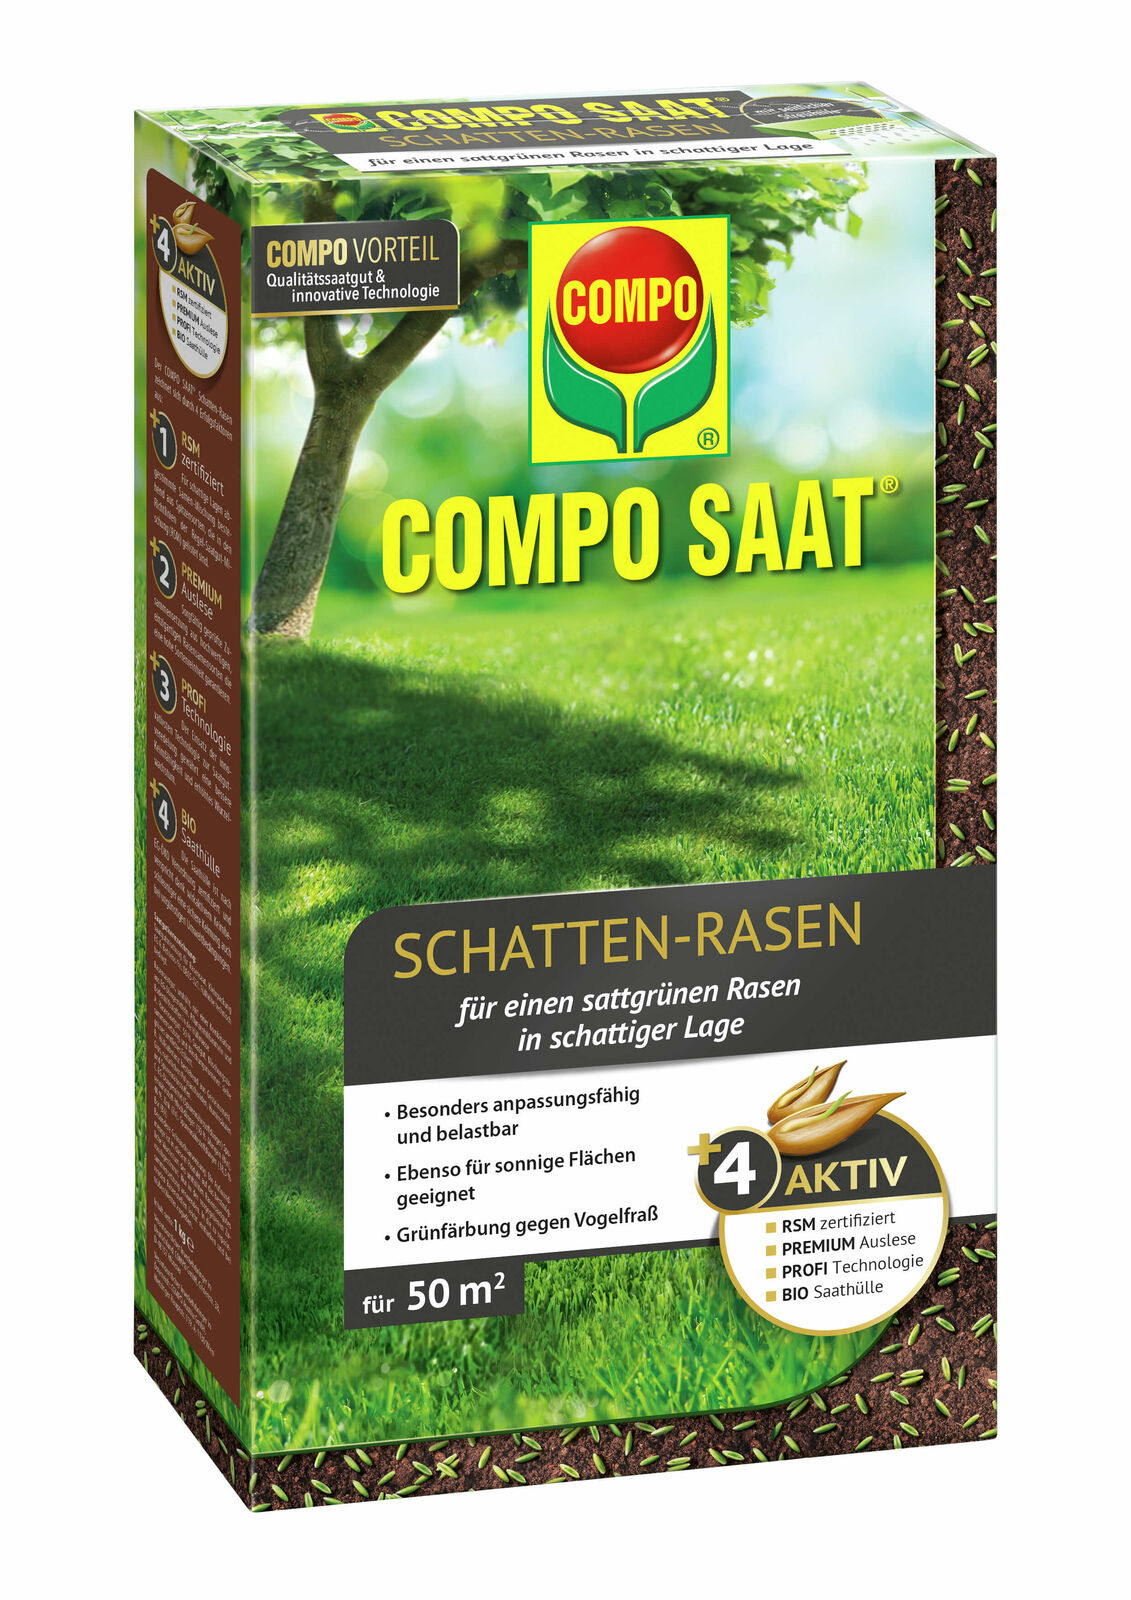  COMPO SAAT Schatten-Rasen 1kg